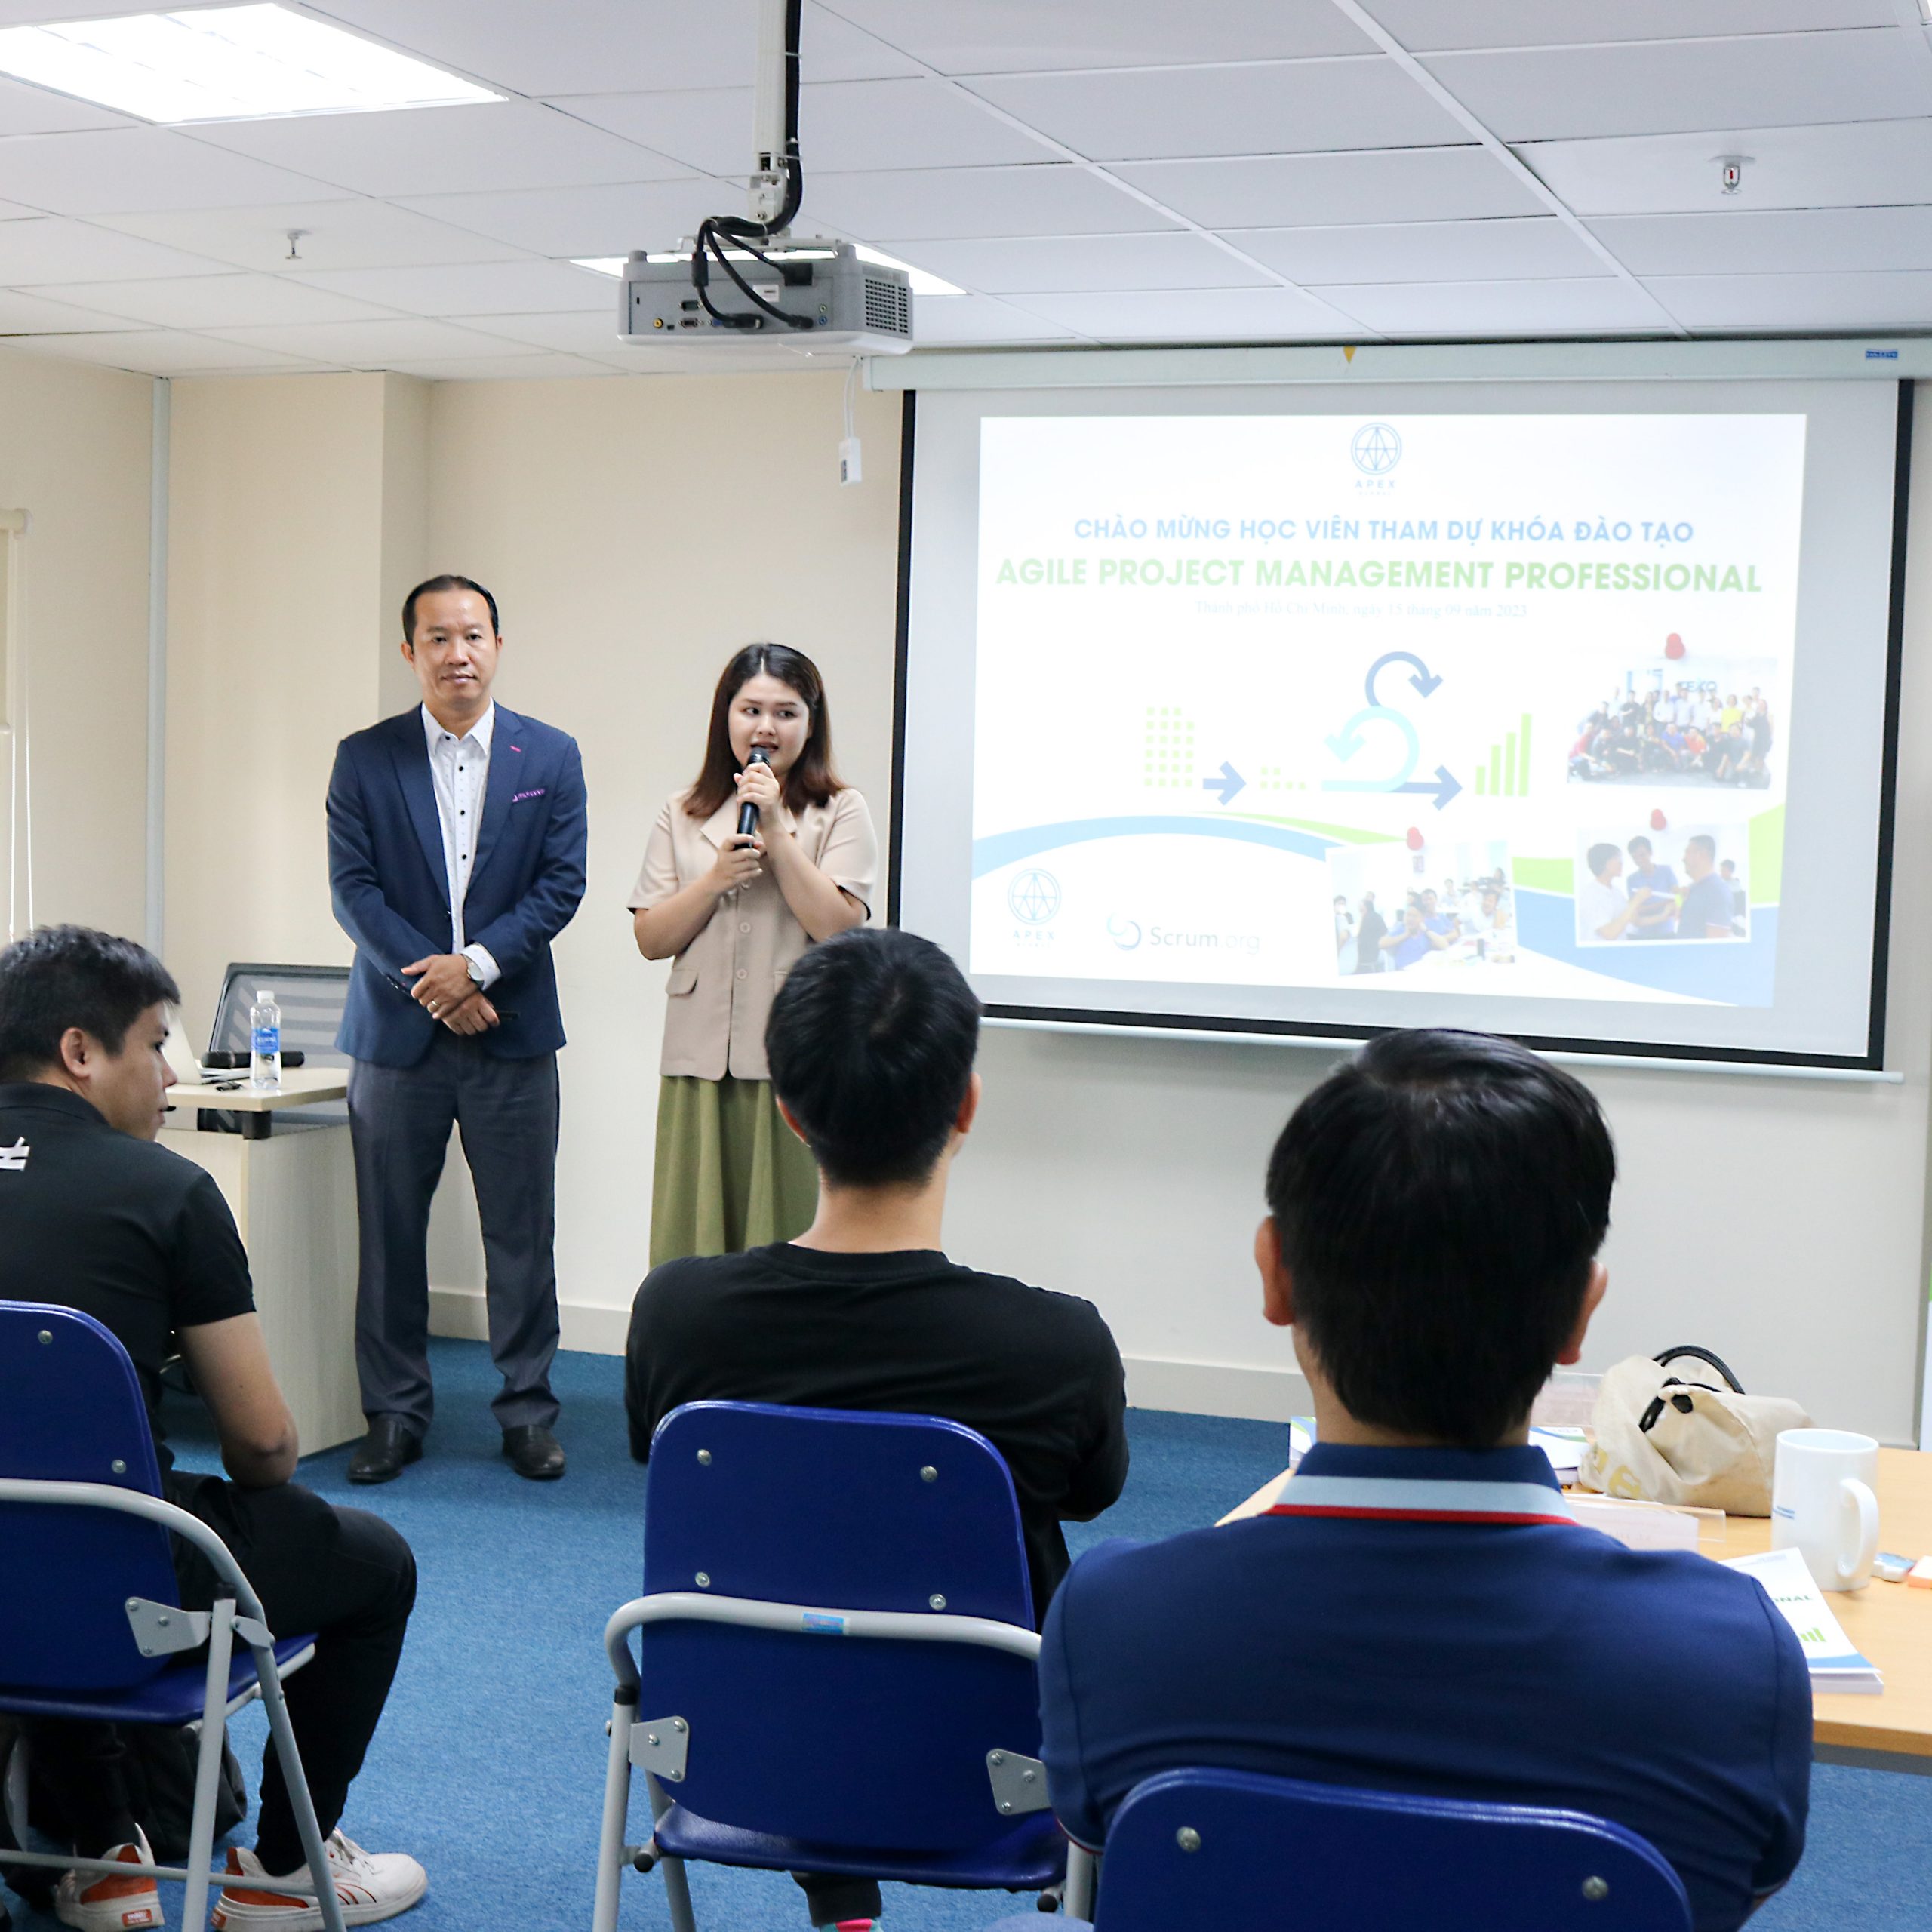 Khai giảng khoá Đào tạo Agile Project Management Professional tháng 9 tại TP. Hồ Chí Minh